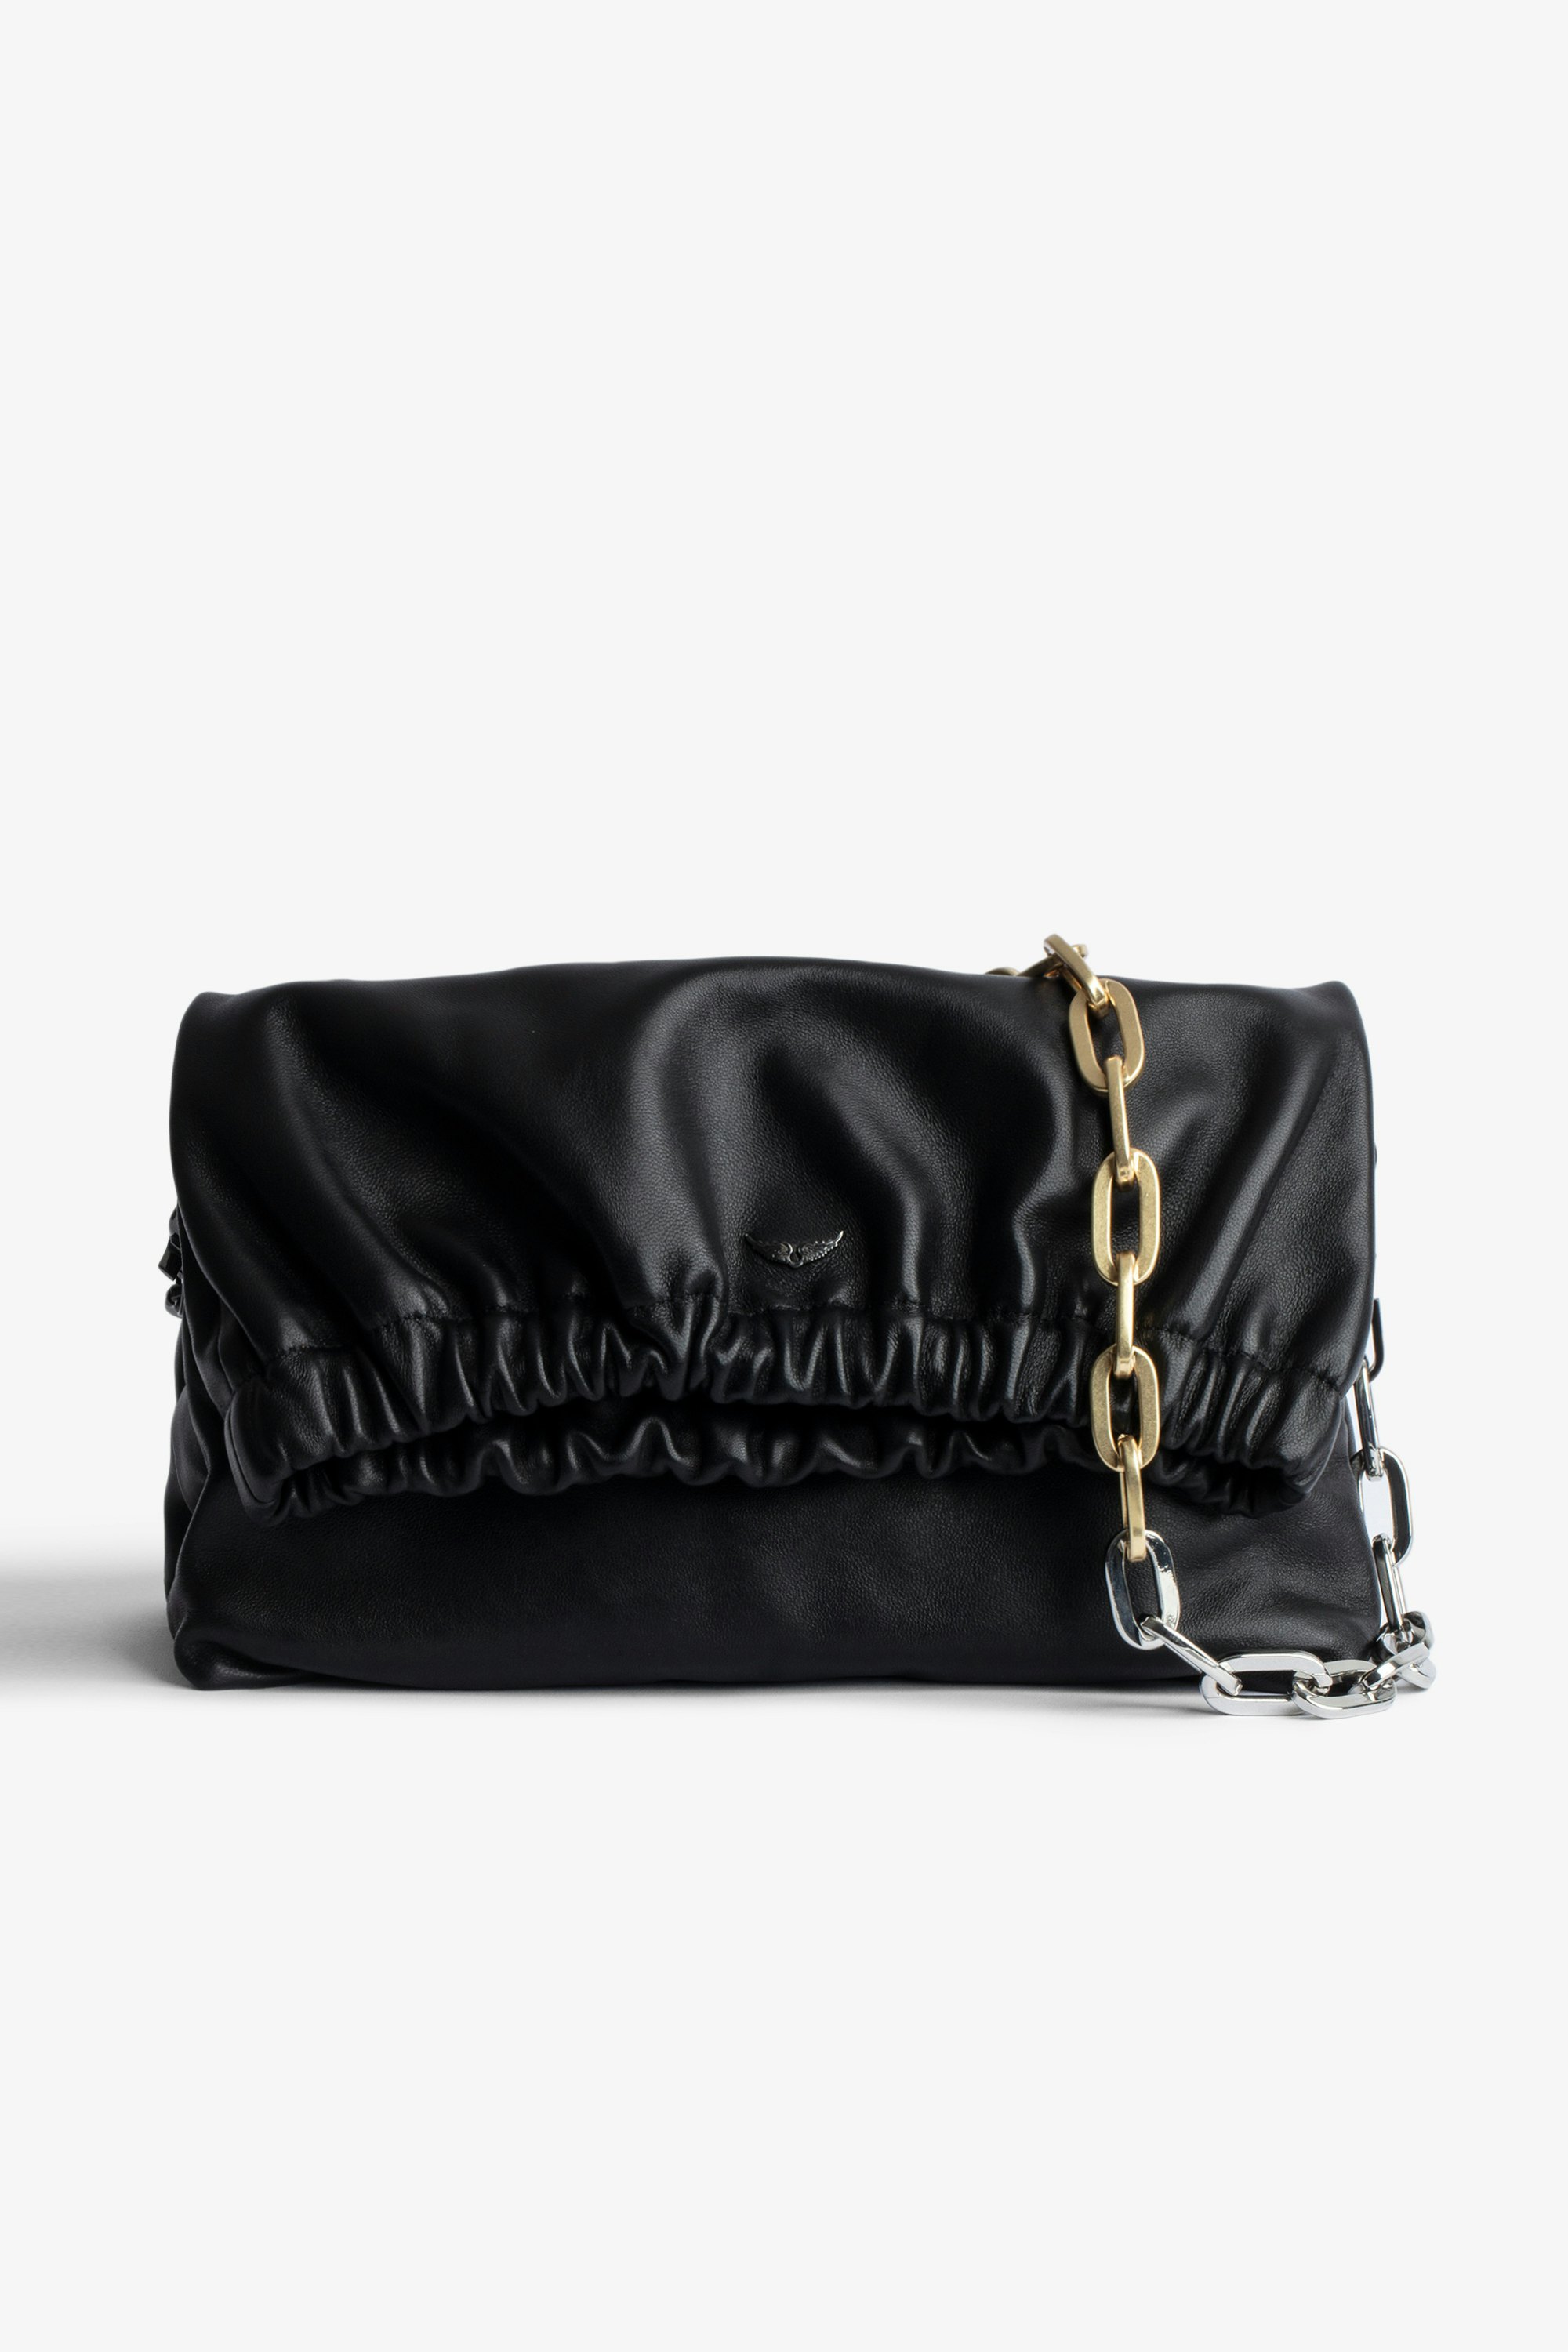 Tasche Rockyssime Damen-Clutch aus schwarzem Glattleder mit zweifarbiger Metallkette